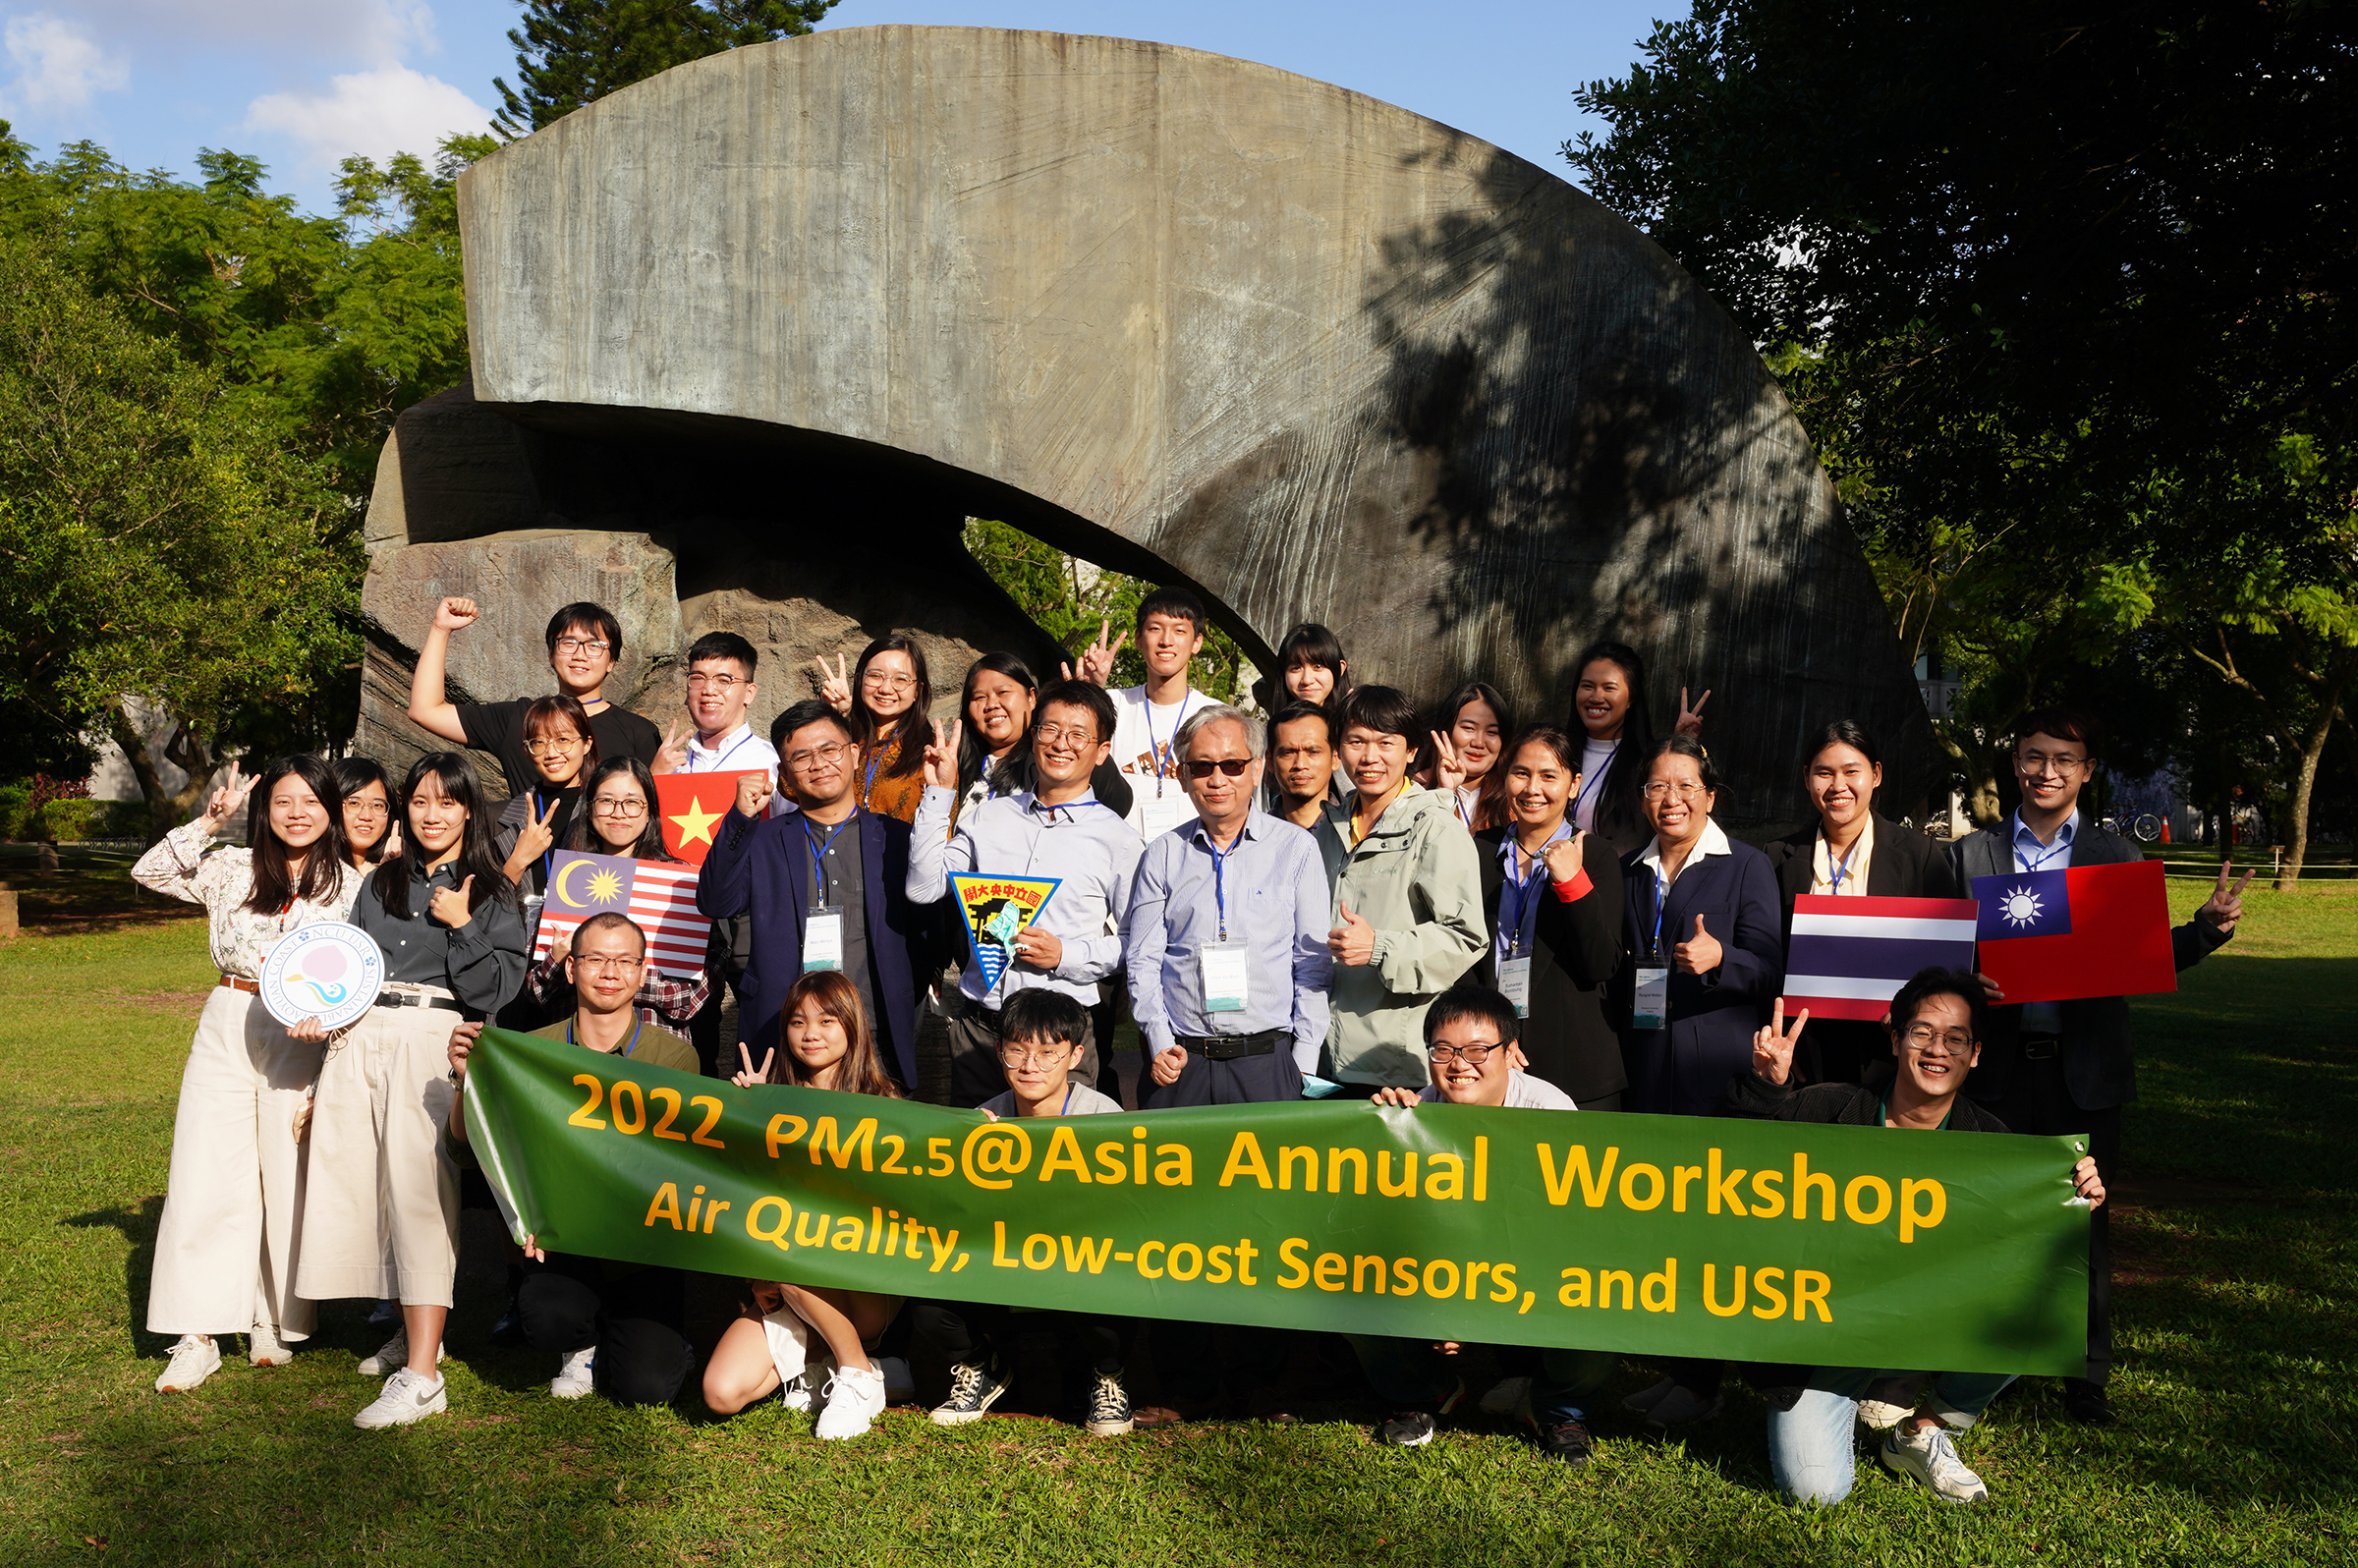 國際工作坊與會人員於中央大學太極銅雕前合照。照片大氣系提供